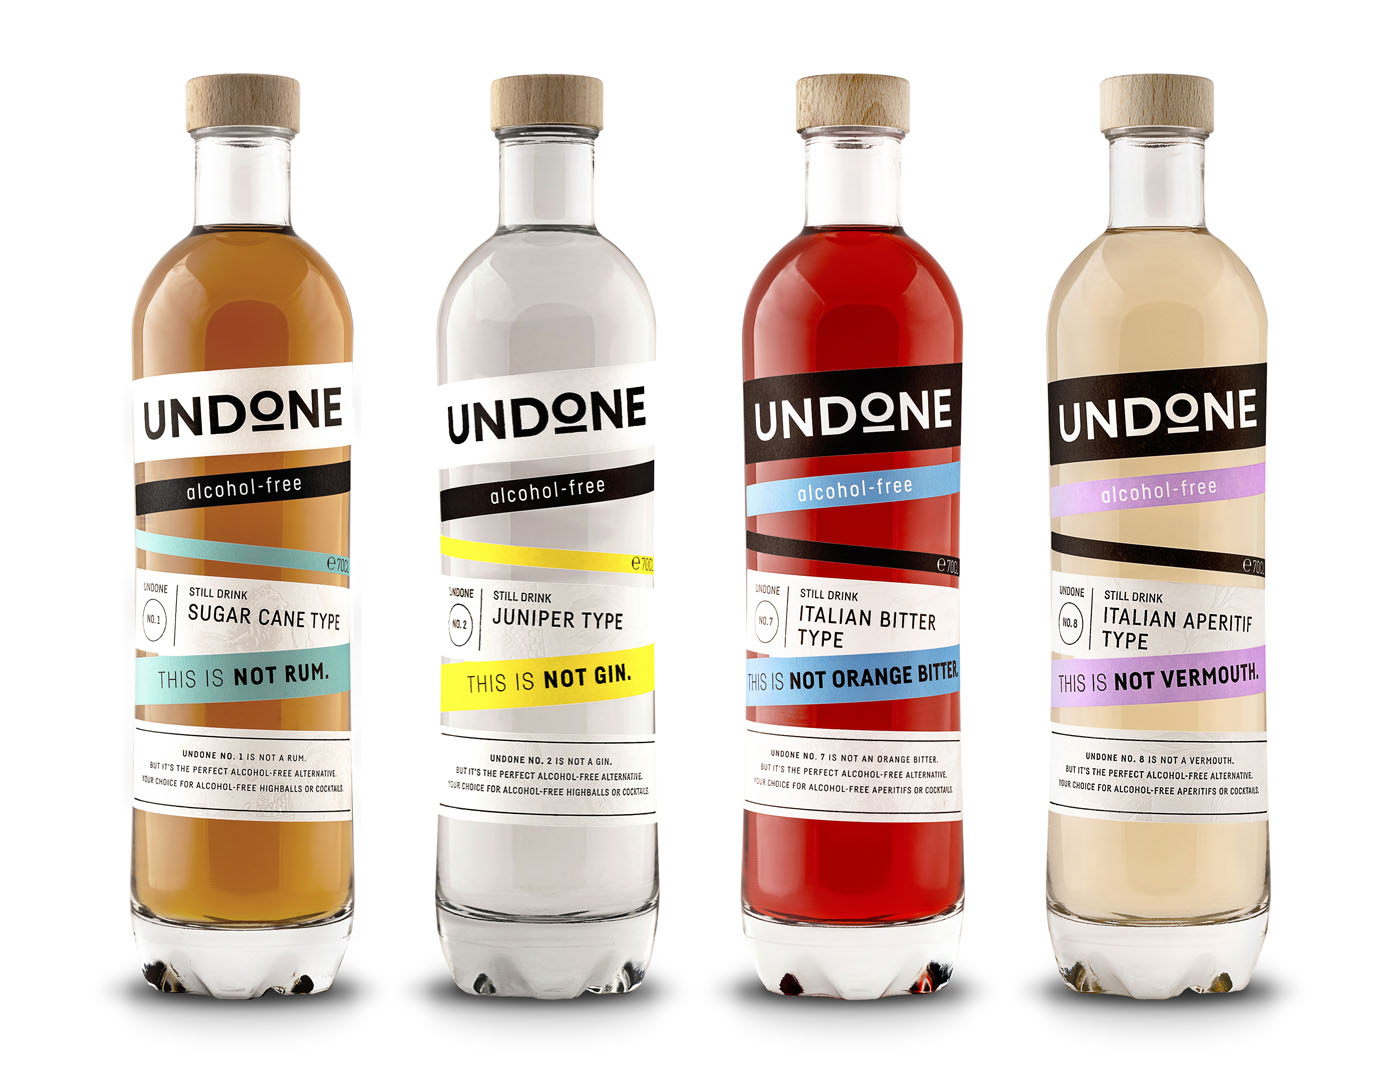 Undone Spirituosen-Alternativen Produktlinie: mit durch – alkoholfreien startet Erste